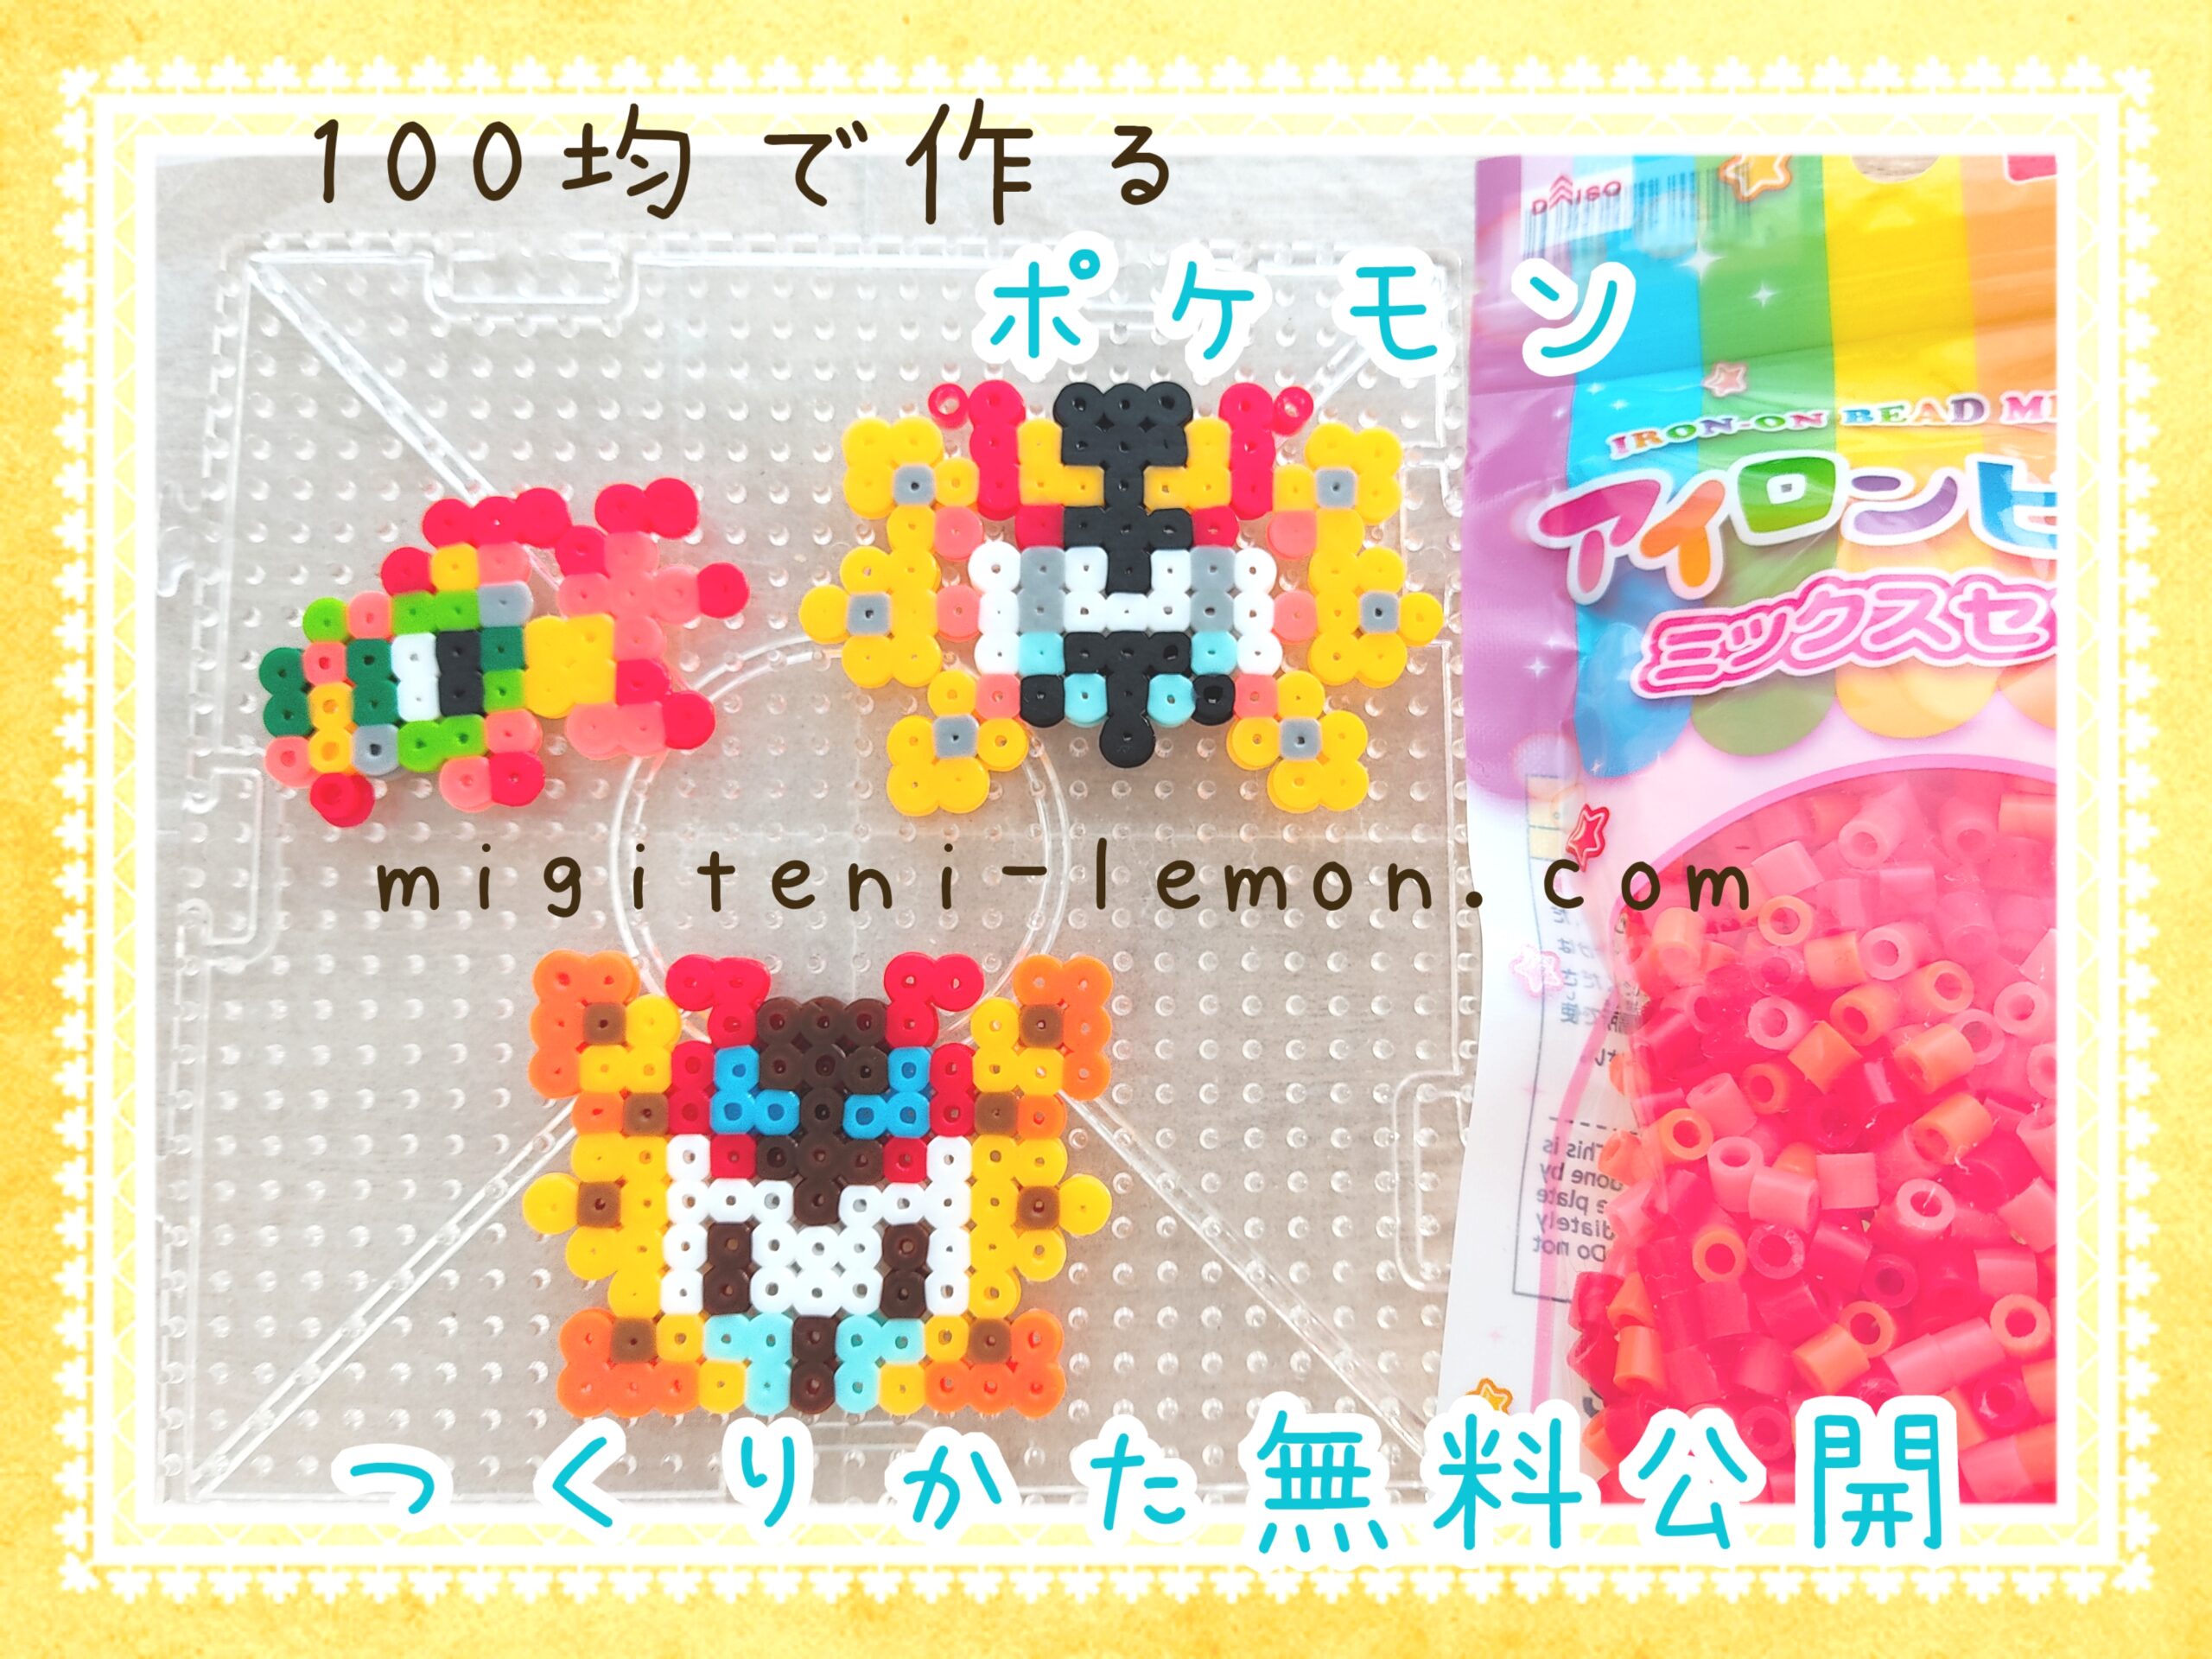 iyui-chi-yu-tetsunodokuga-ironmoth-pokemon-beads-zuan